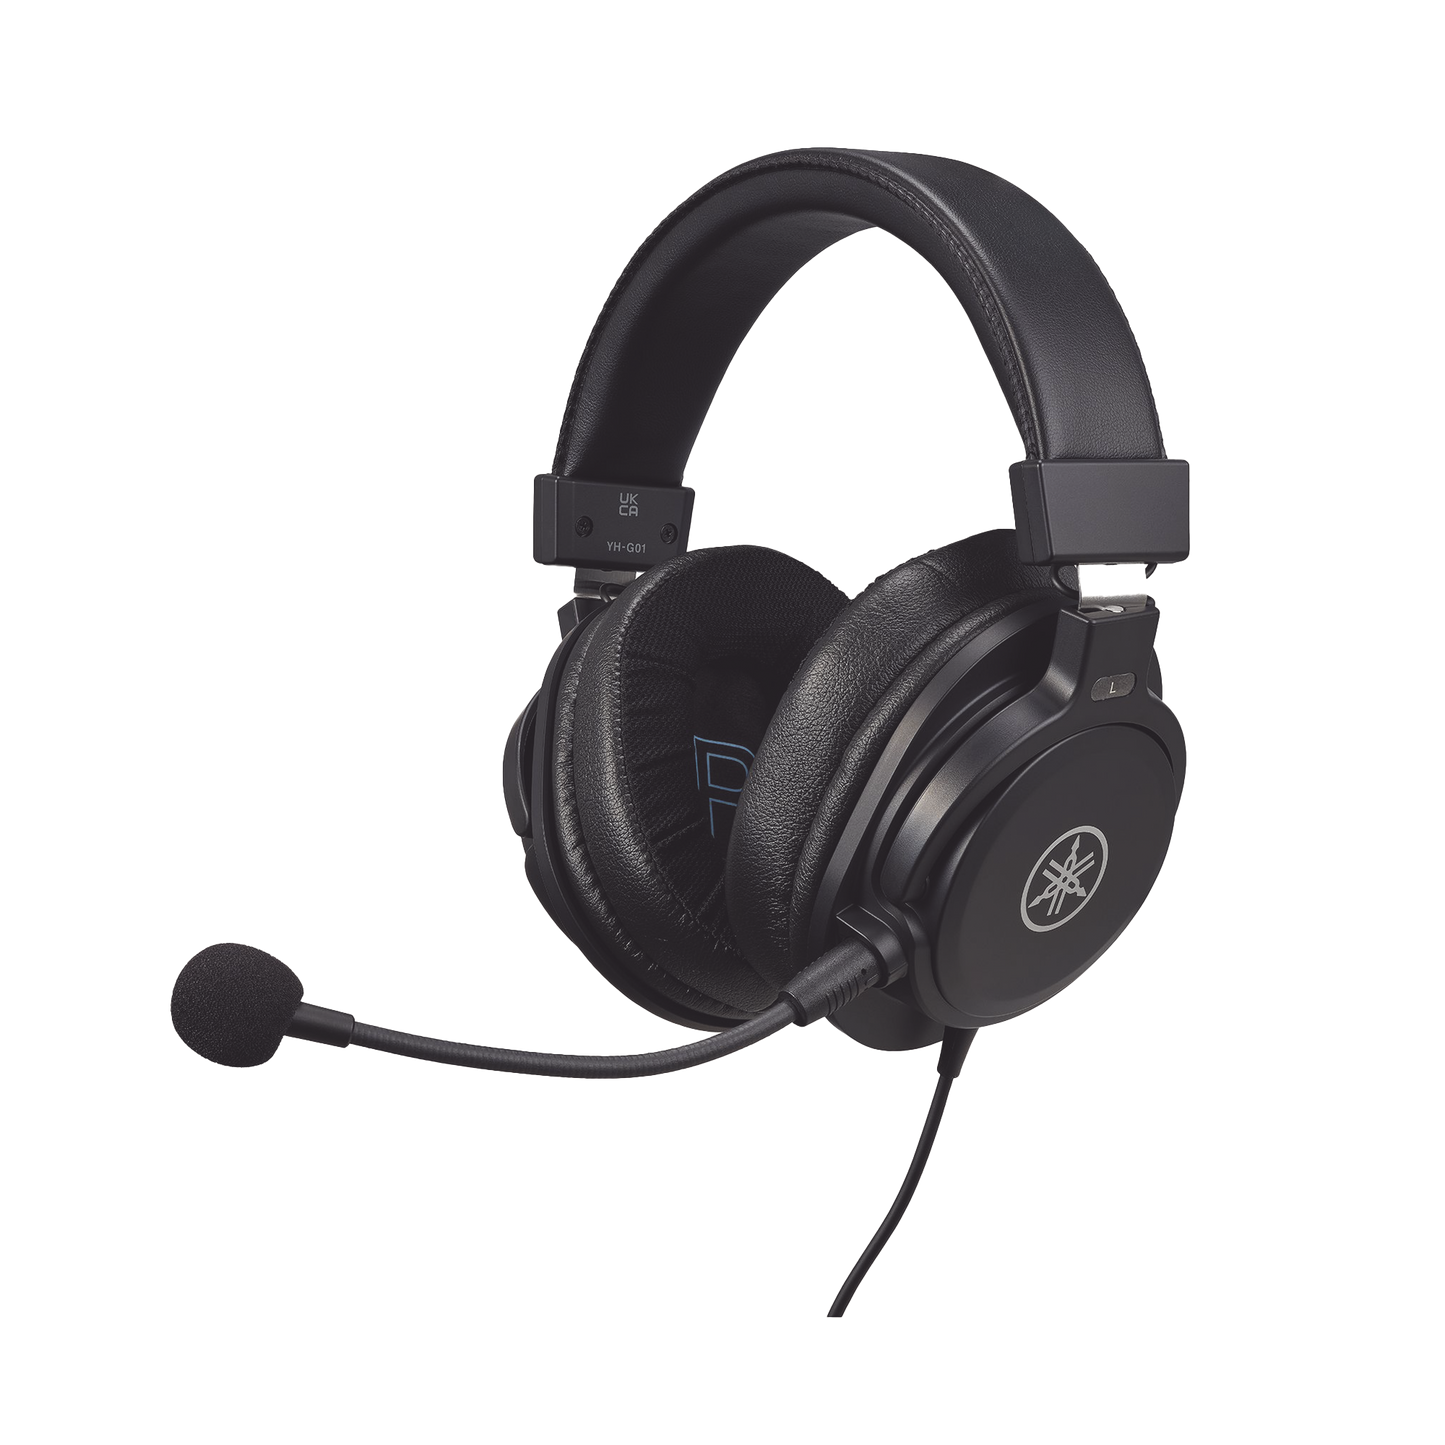 Headset de Audífonos con Micrófono | Ideal para Gaming y Streaming | Uso general | Micrófono desmontable | Audífonos calidad de Estudio